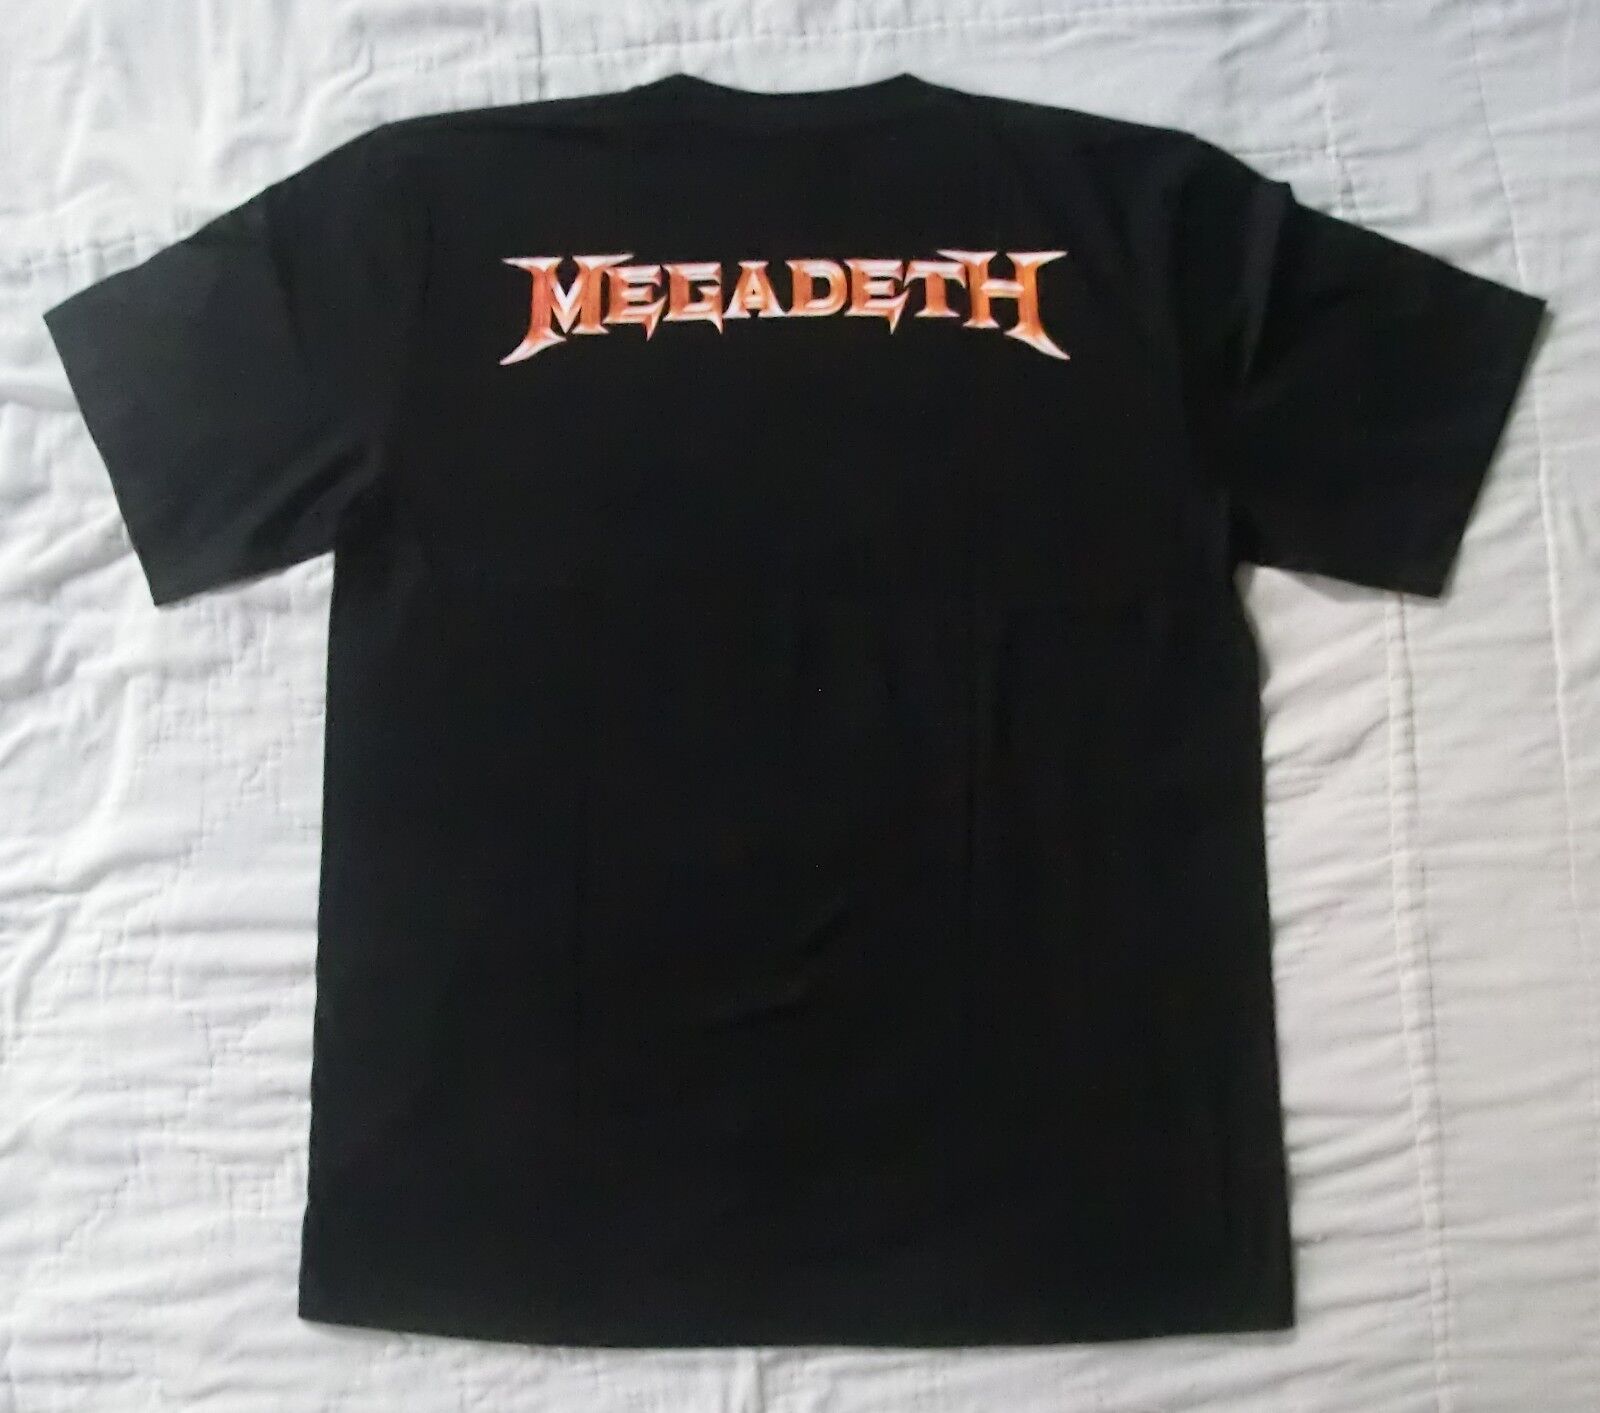 激レアデッドストック ロンT メガデス Megadeth 2001年製ビンテージ